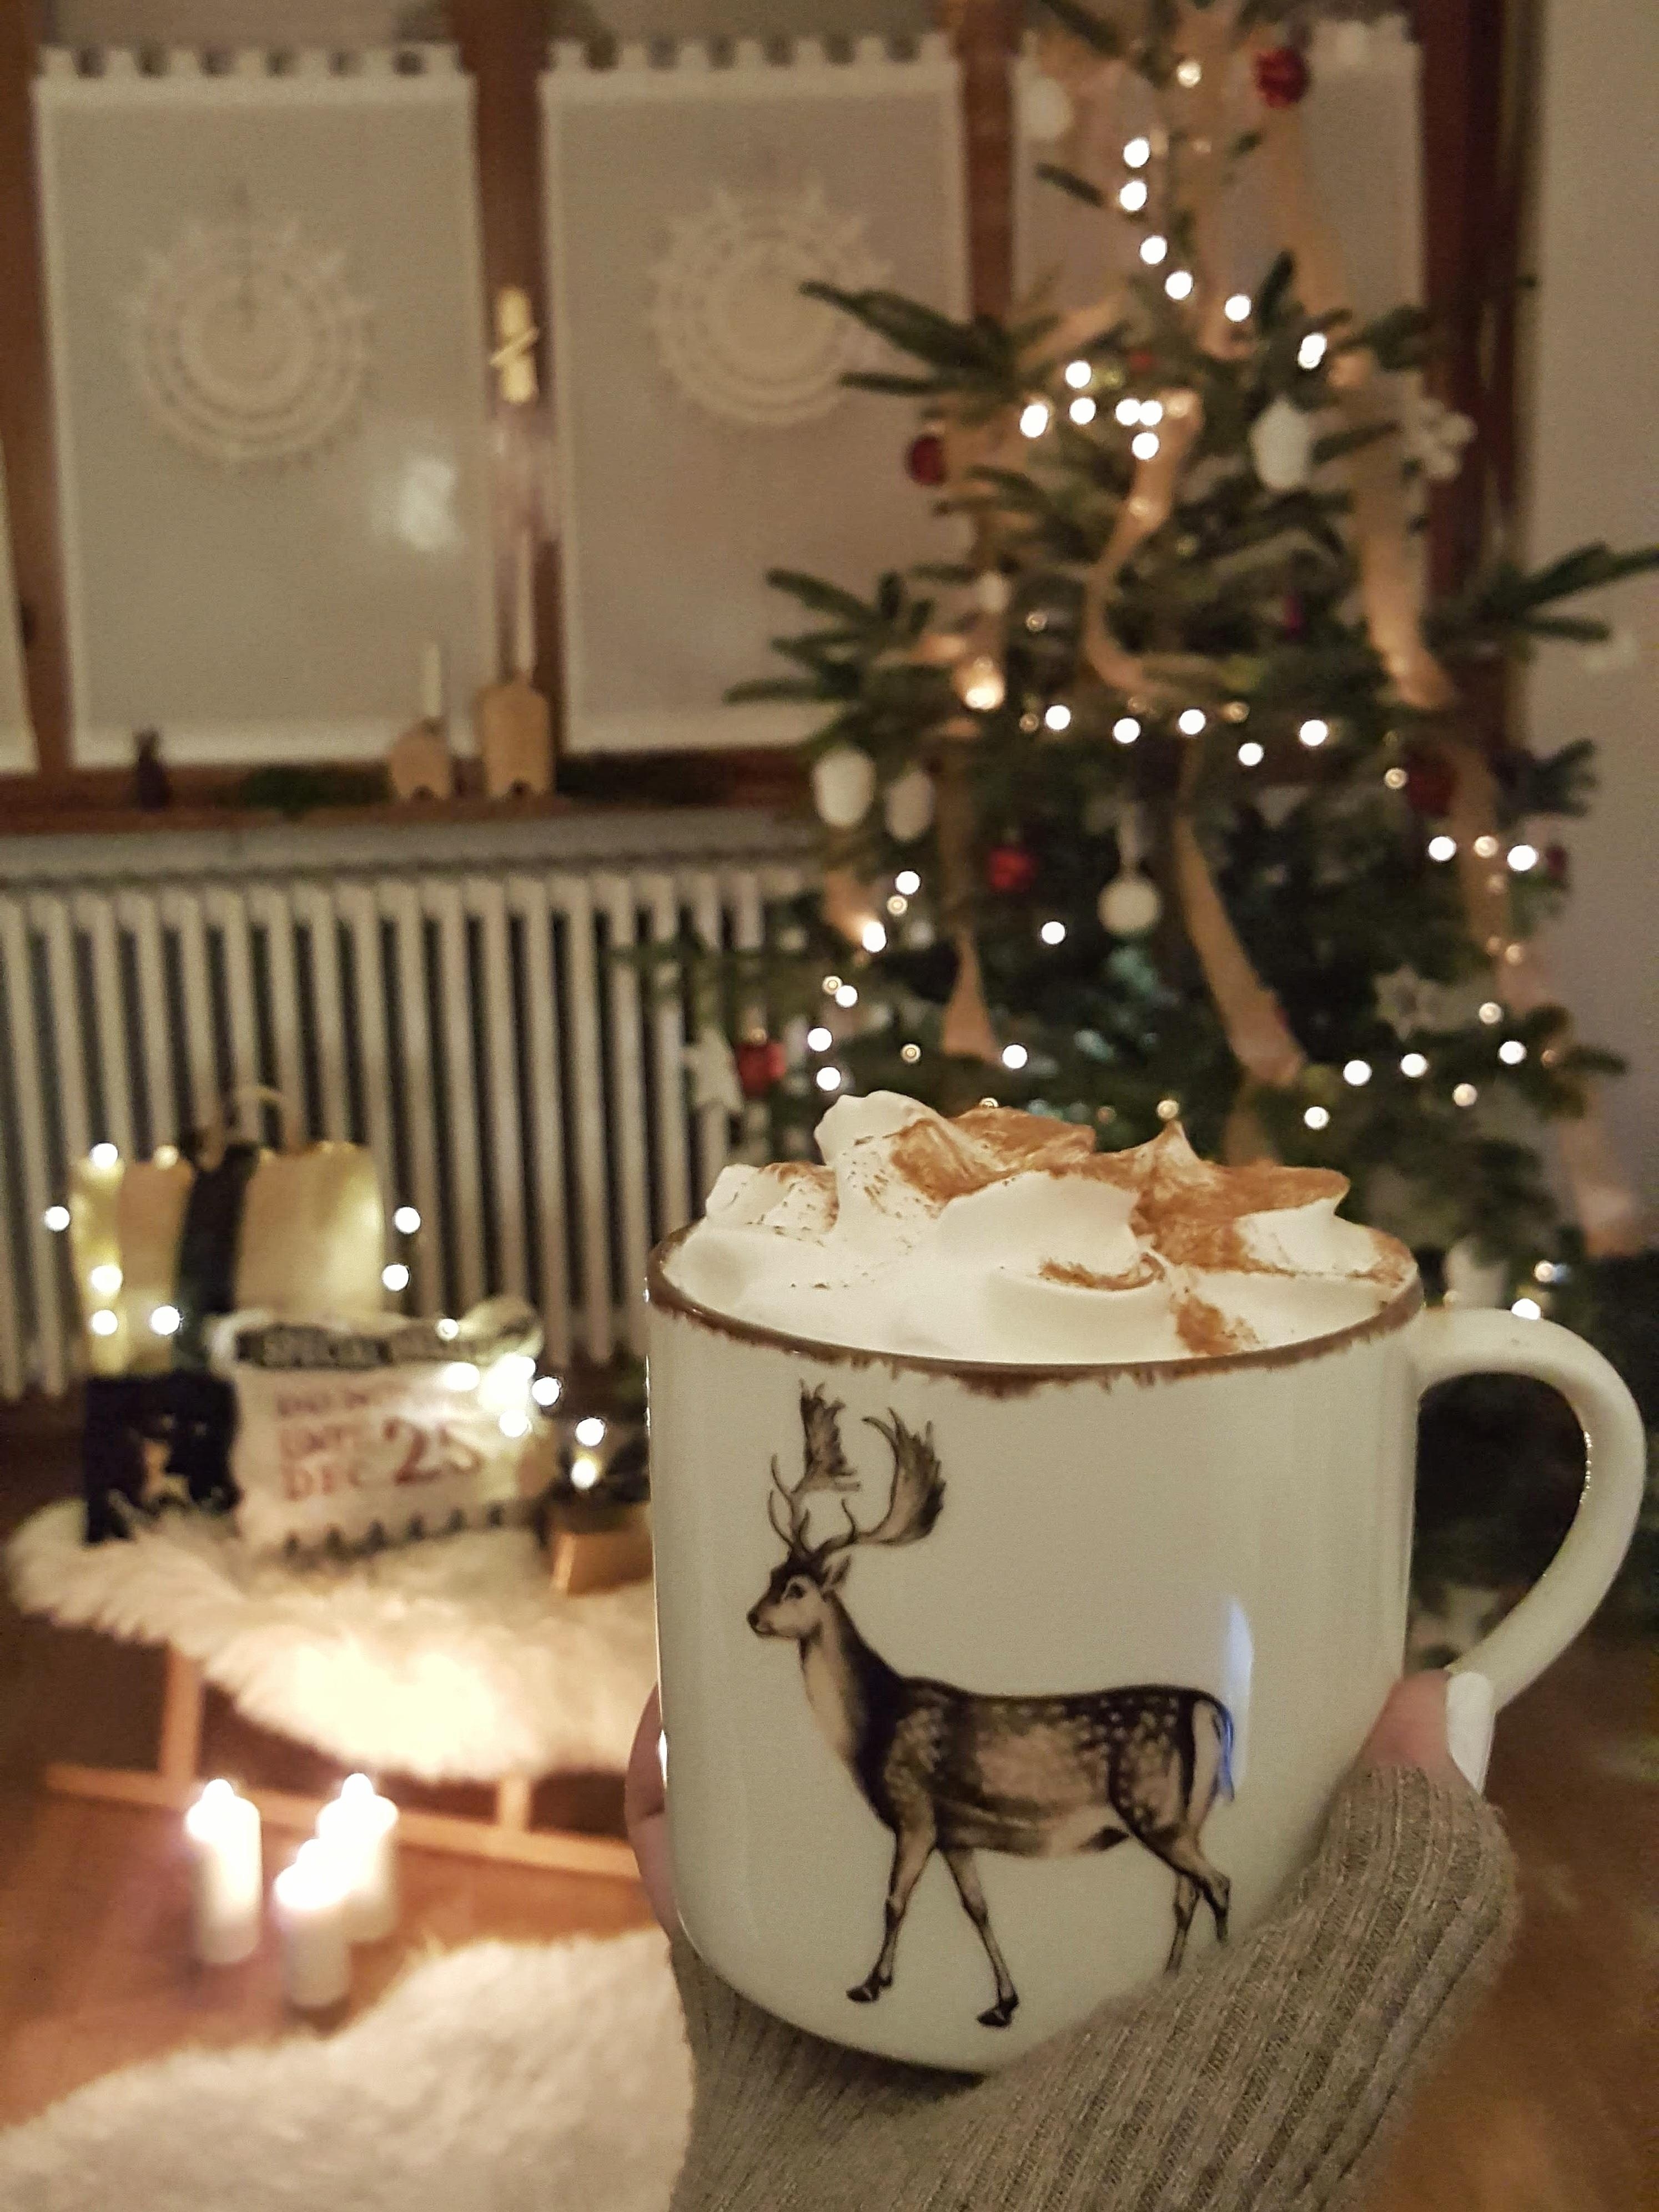 Letztes Jahr... #weihnachten #interior #hygge #cozy #weihnachtsbaum #couchliebt #weihnachtszeit #advent #weihnachtsdeko